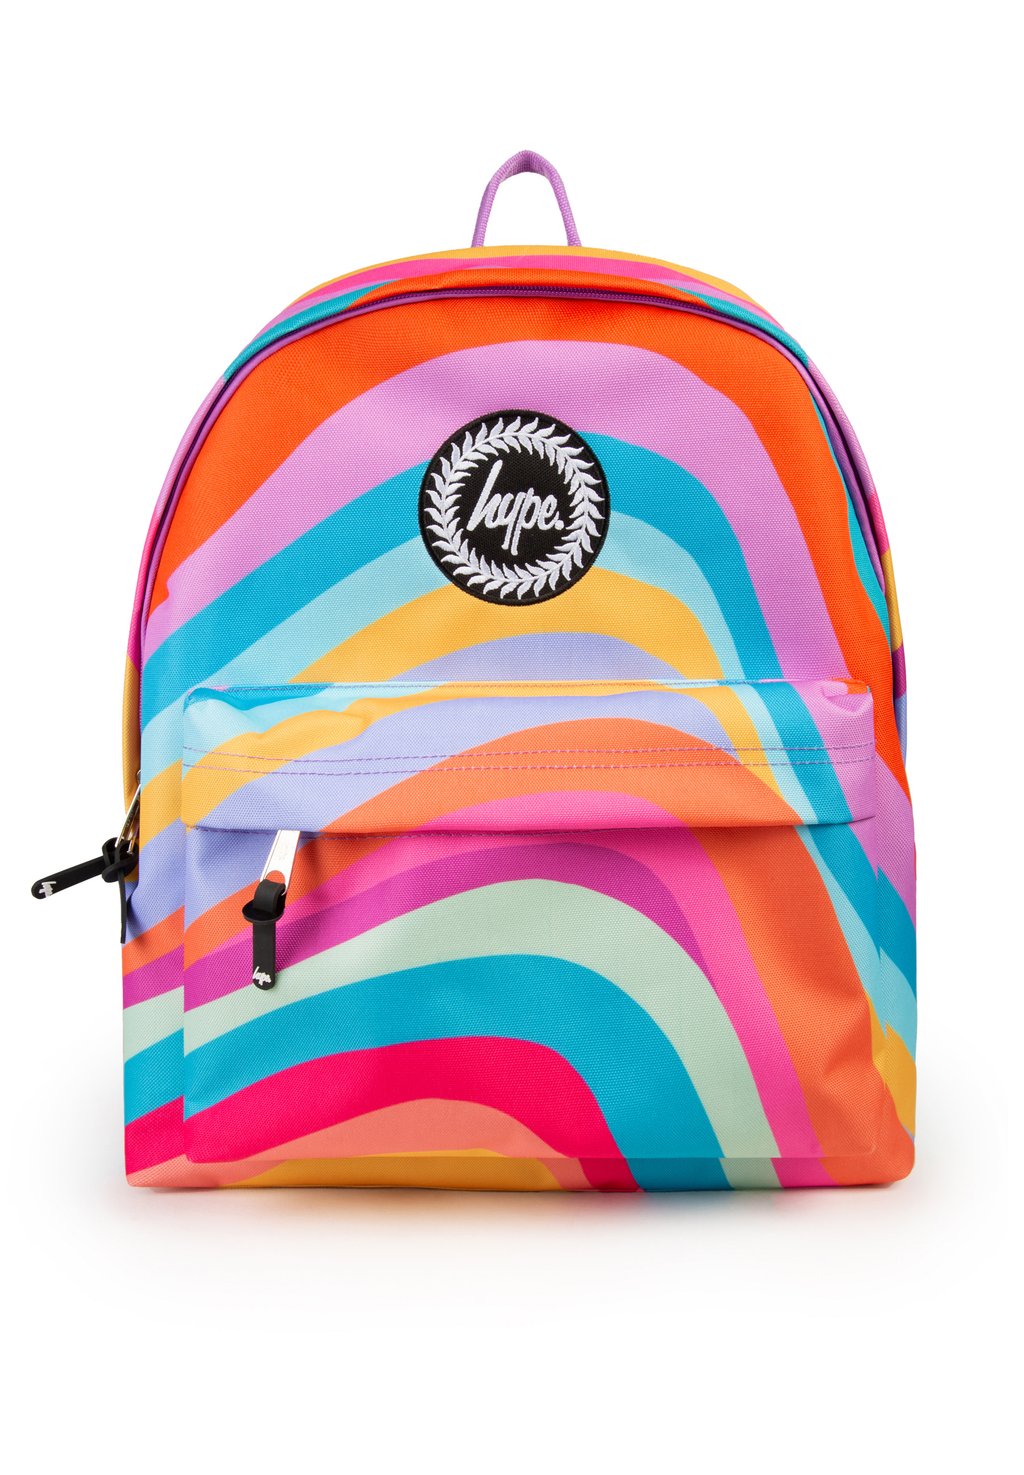 Туристический рюкзак WAVEY Hype, цвет multi туристический рюкзак malibu fade hype цвет multi